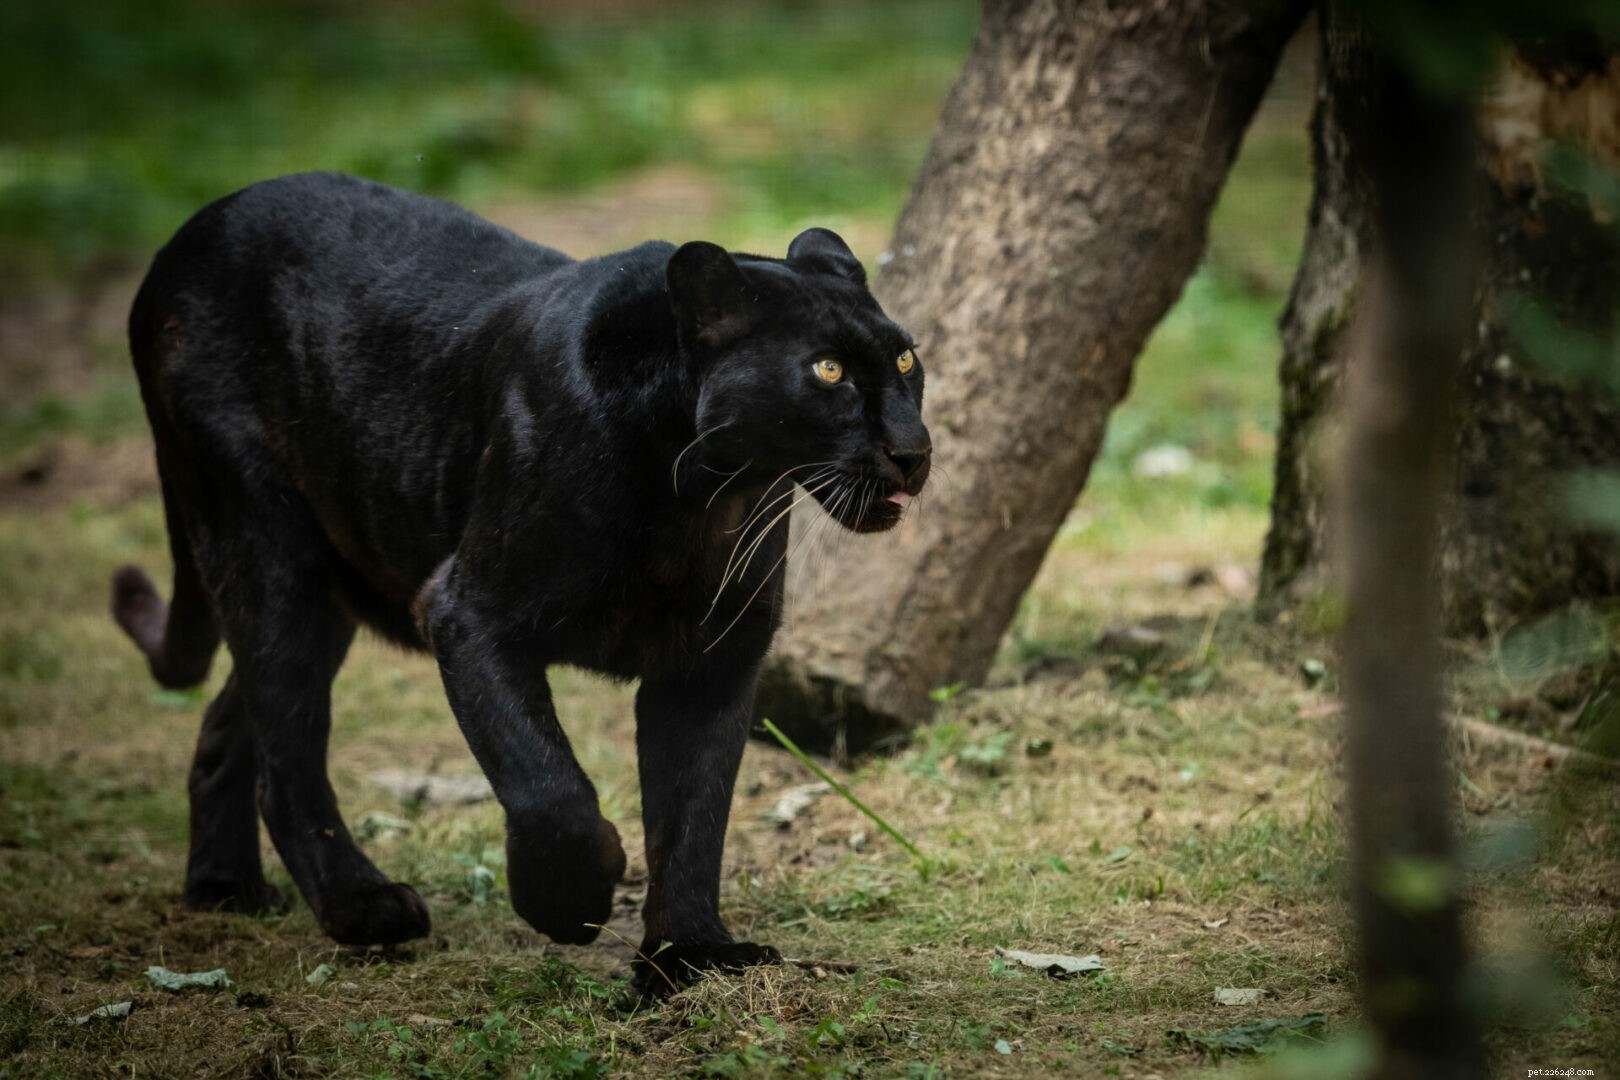 Big Cat 411:Tudo sobre o Pantera Negra